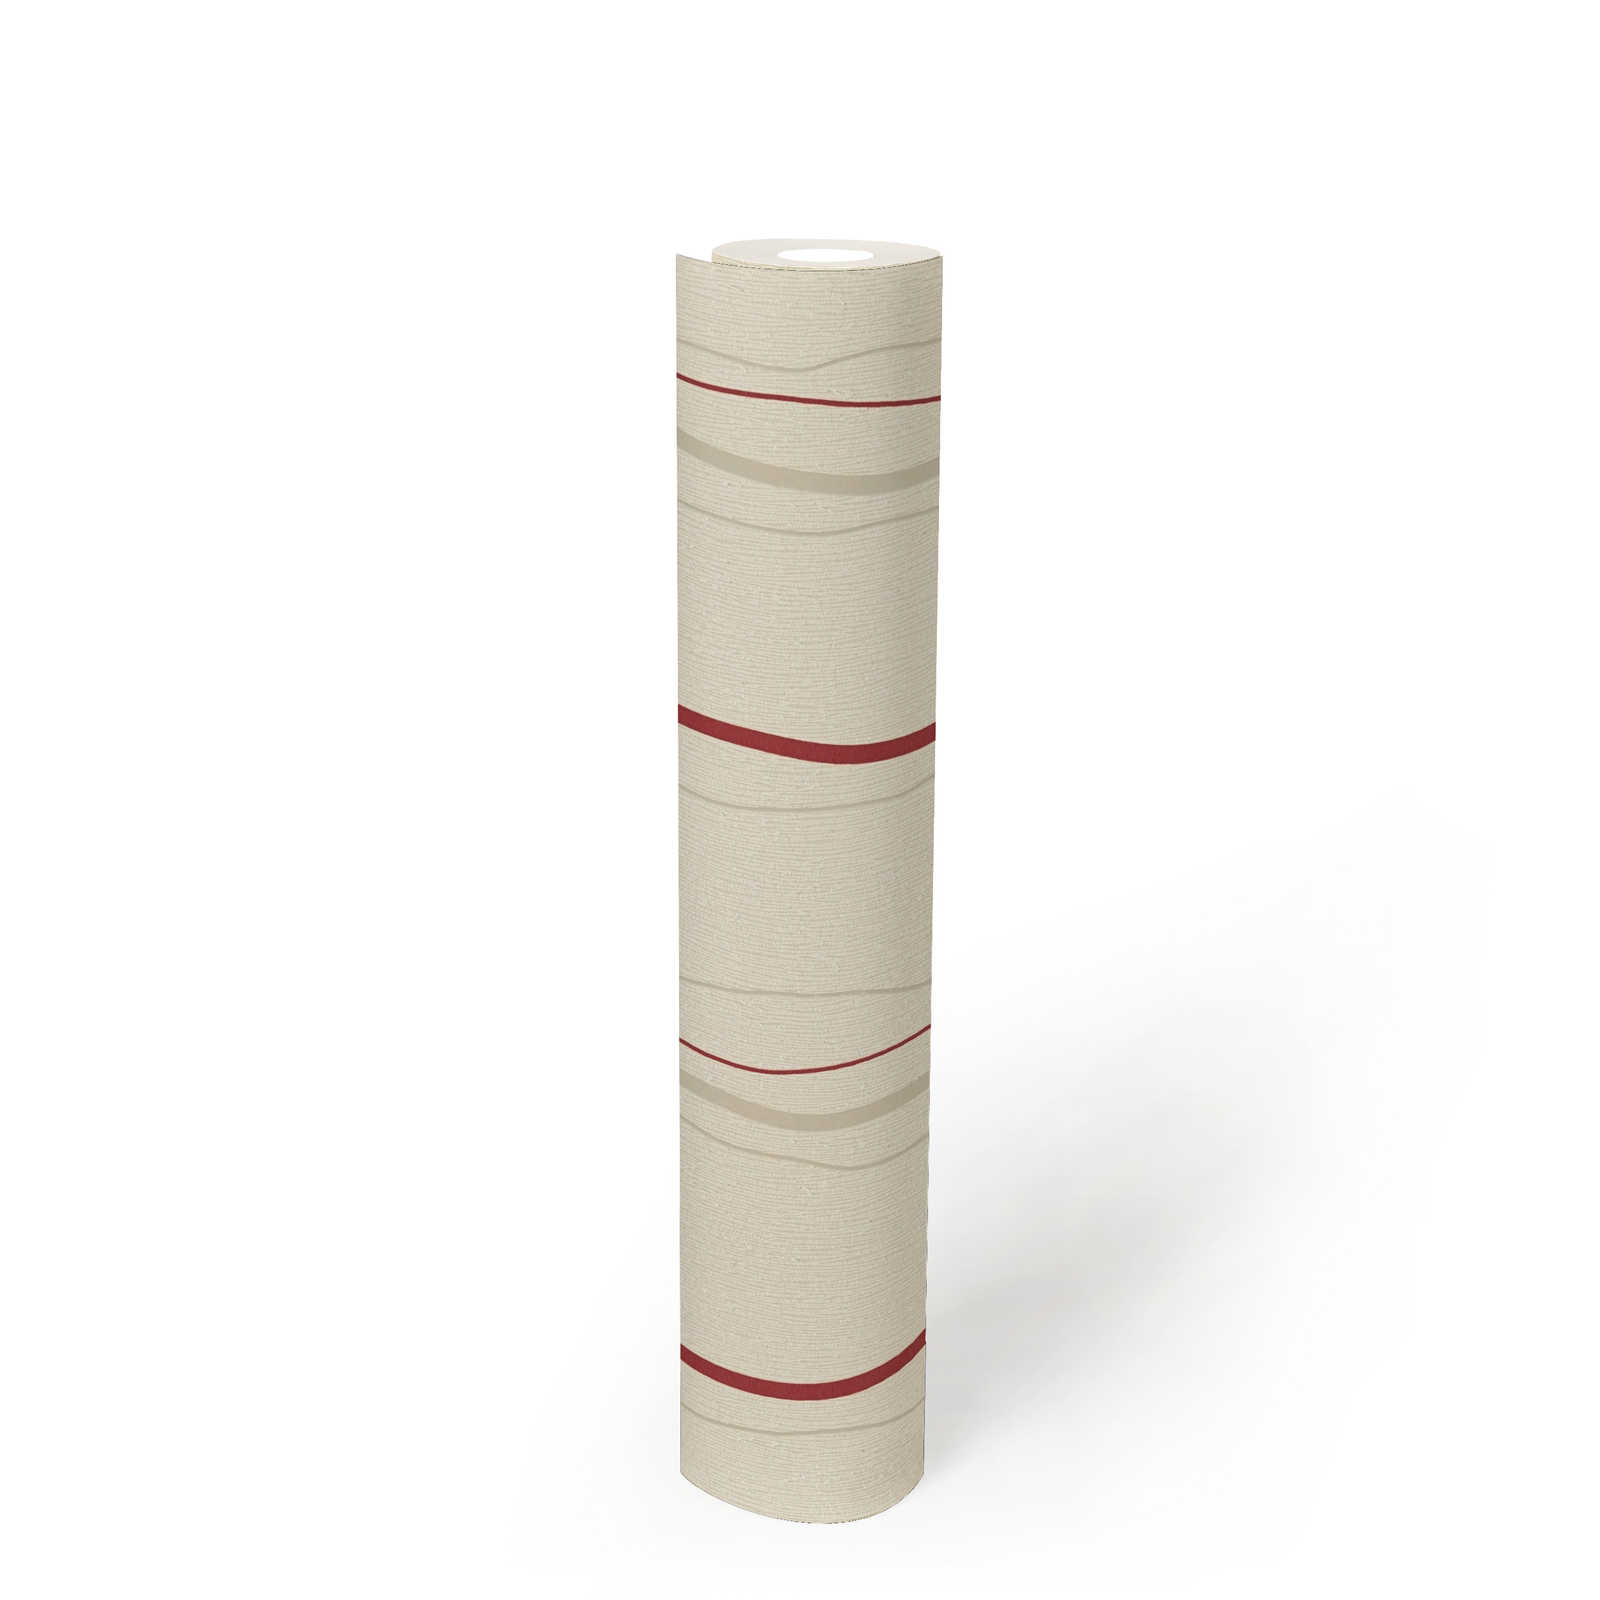             Behang met lijnenspel verticale strepen - crème, rood, beige
        